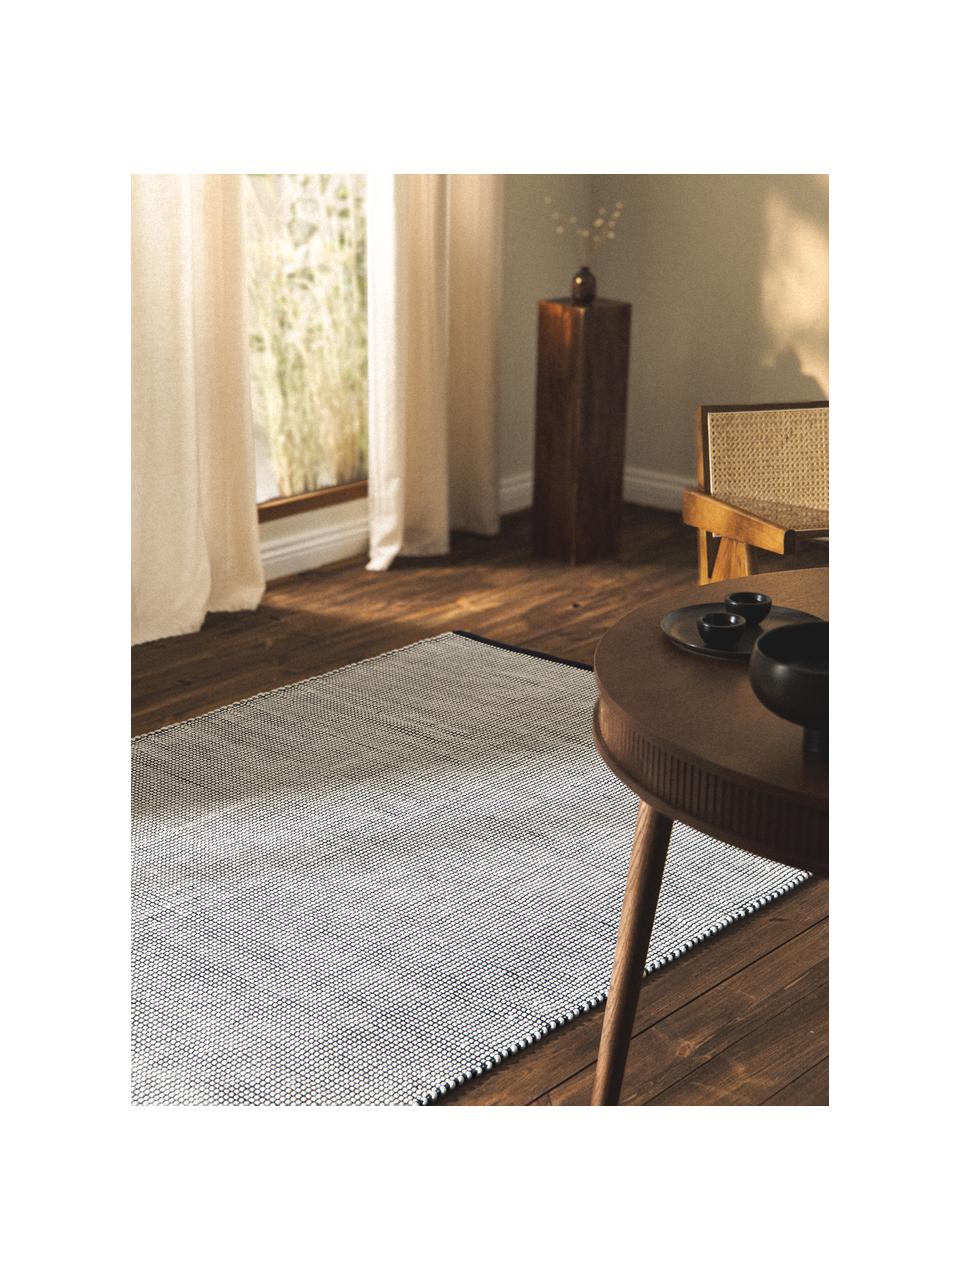 Ručně tkaný vlněný koberec Amaro, Černá, krémově bílá, Š 200 cm, D 300 cm (velikost L)